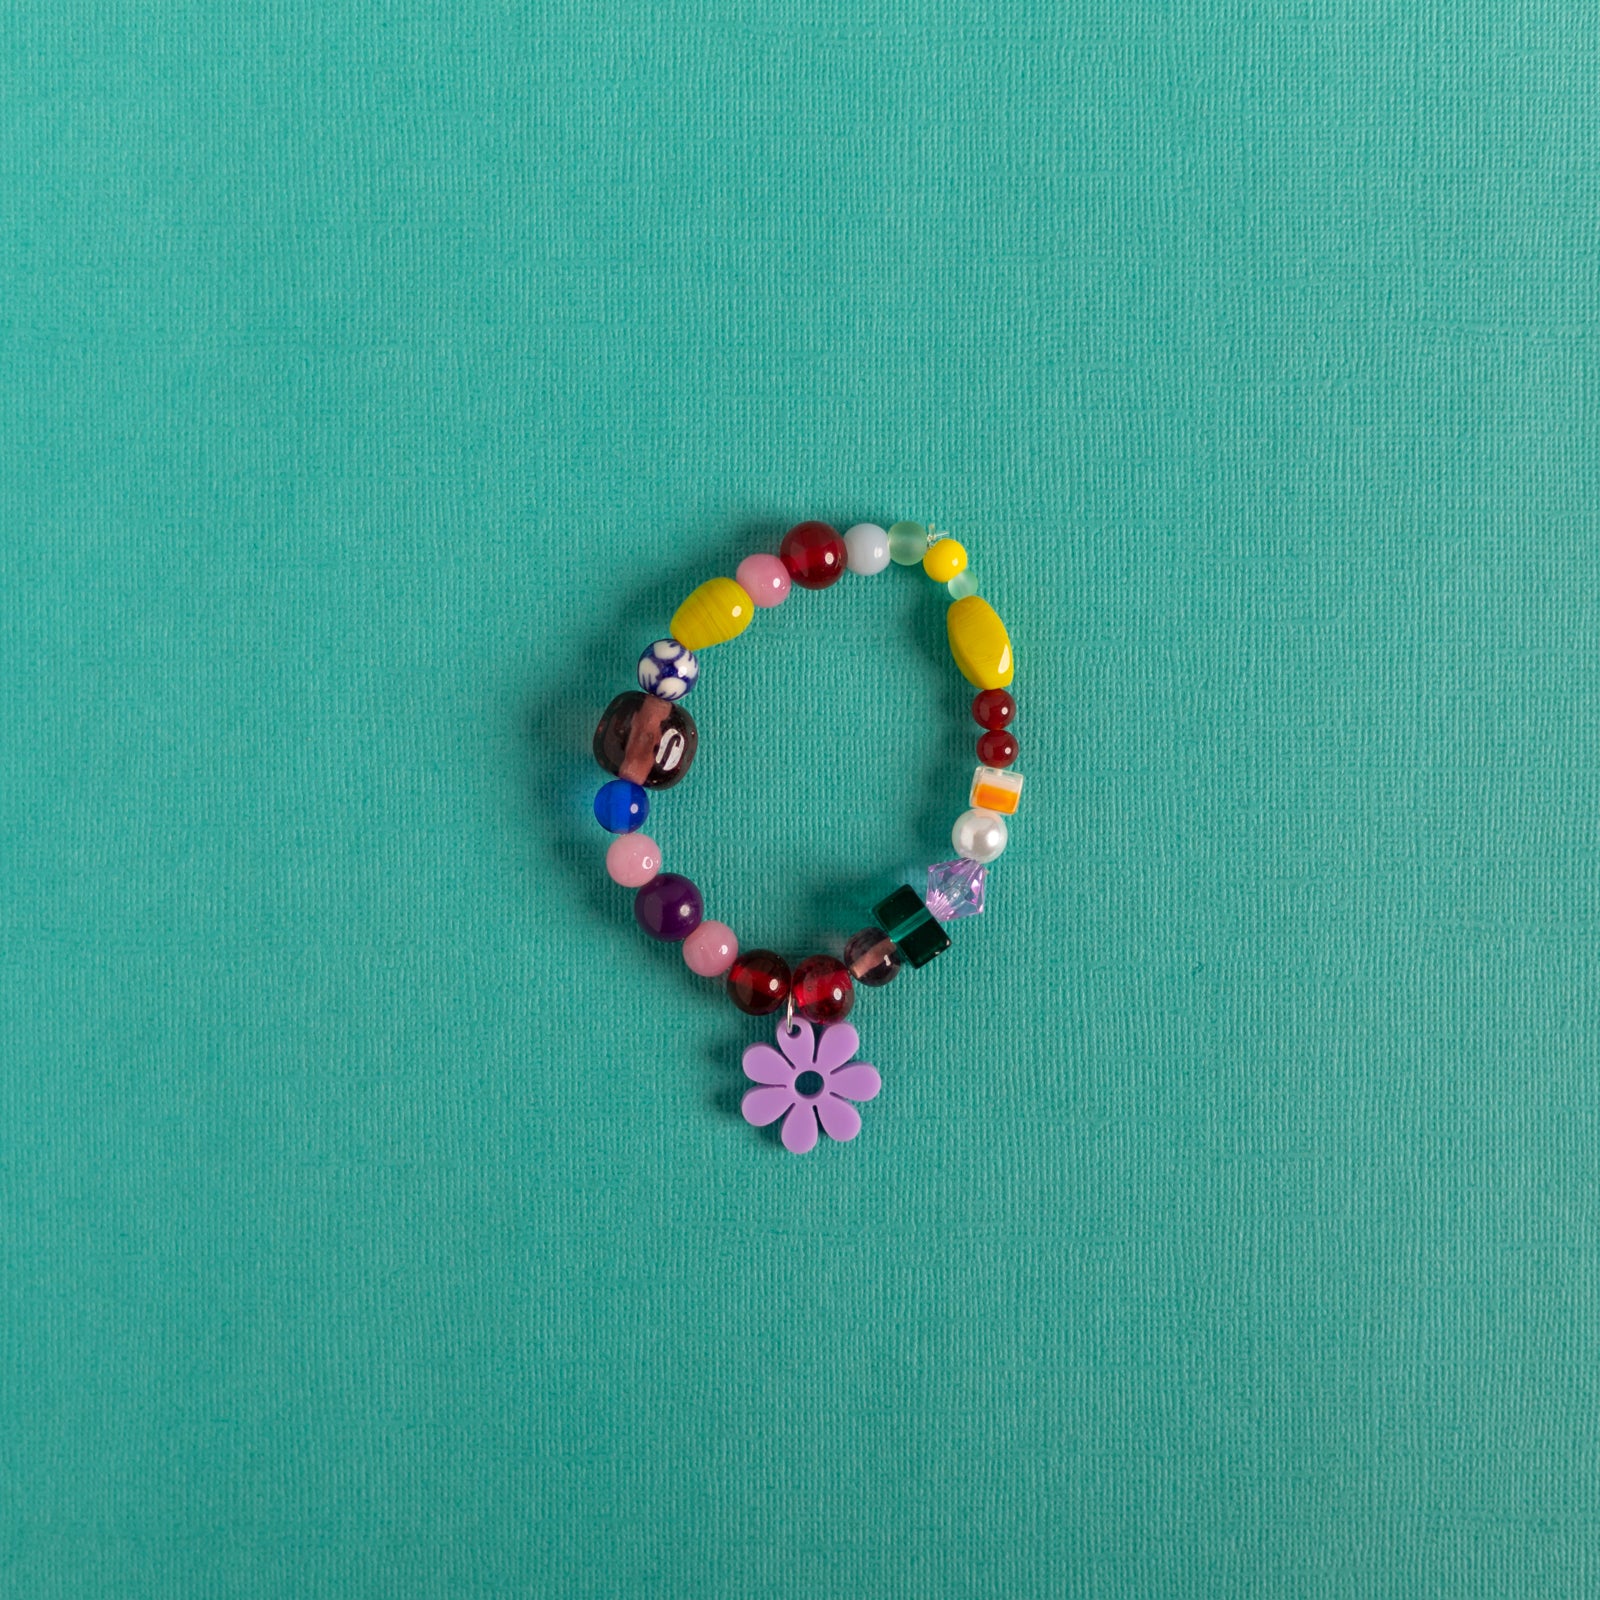 Beaded Daisy Bracelets in Lilac